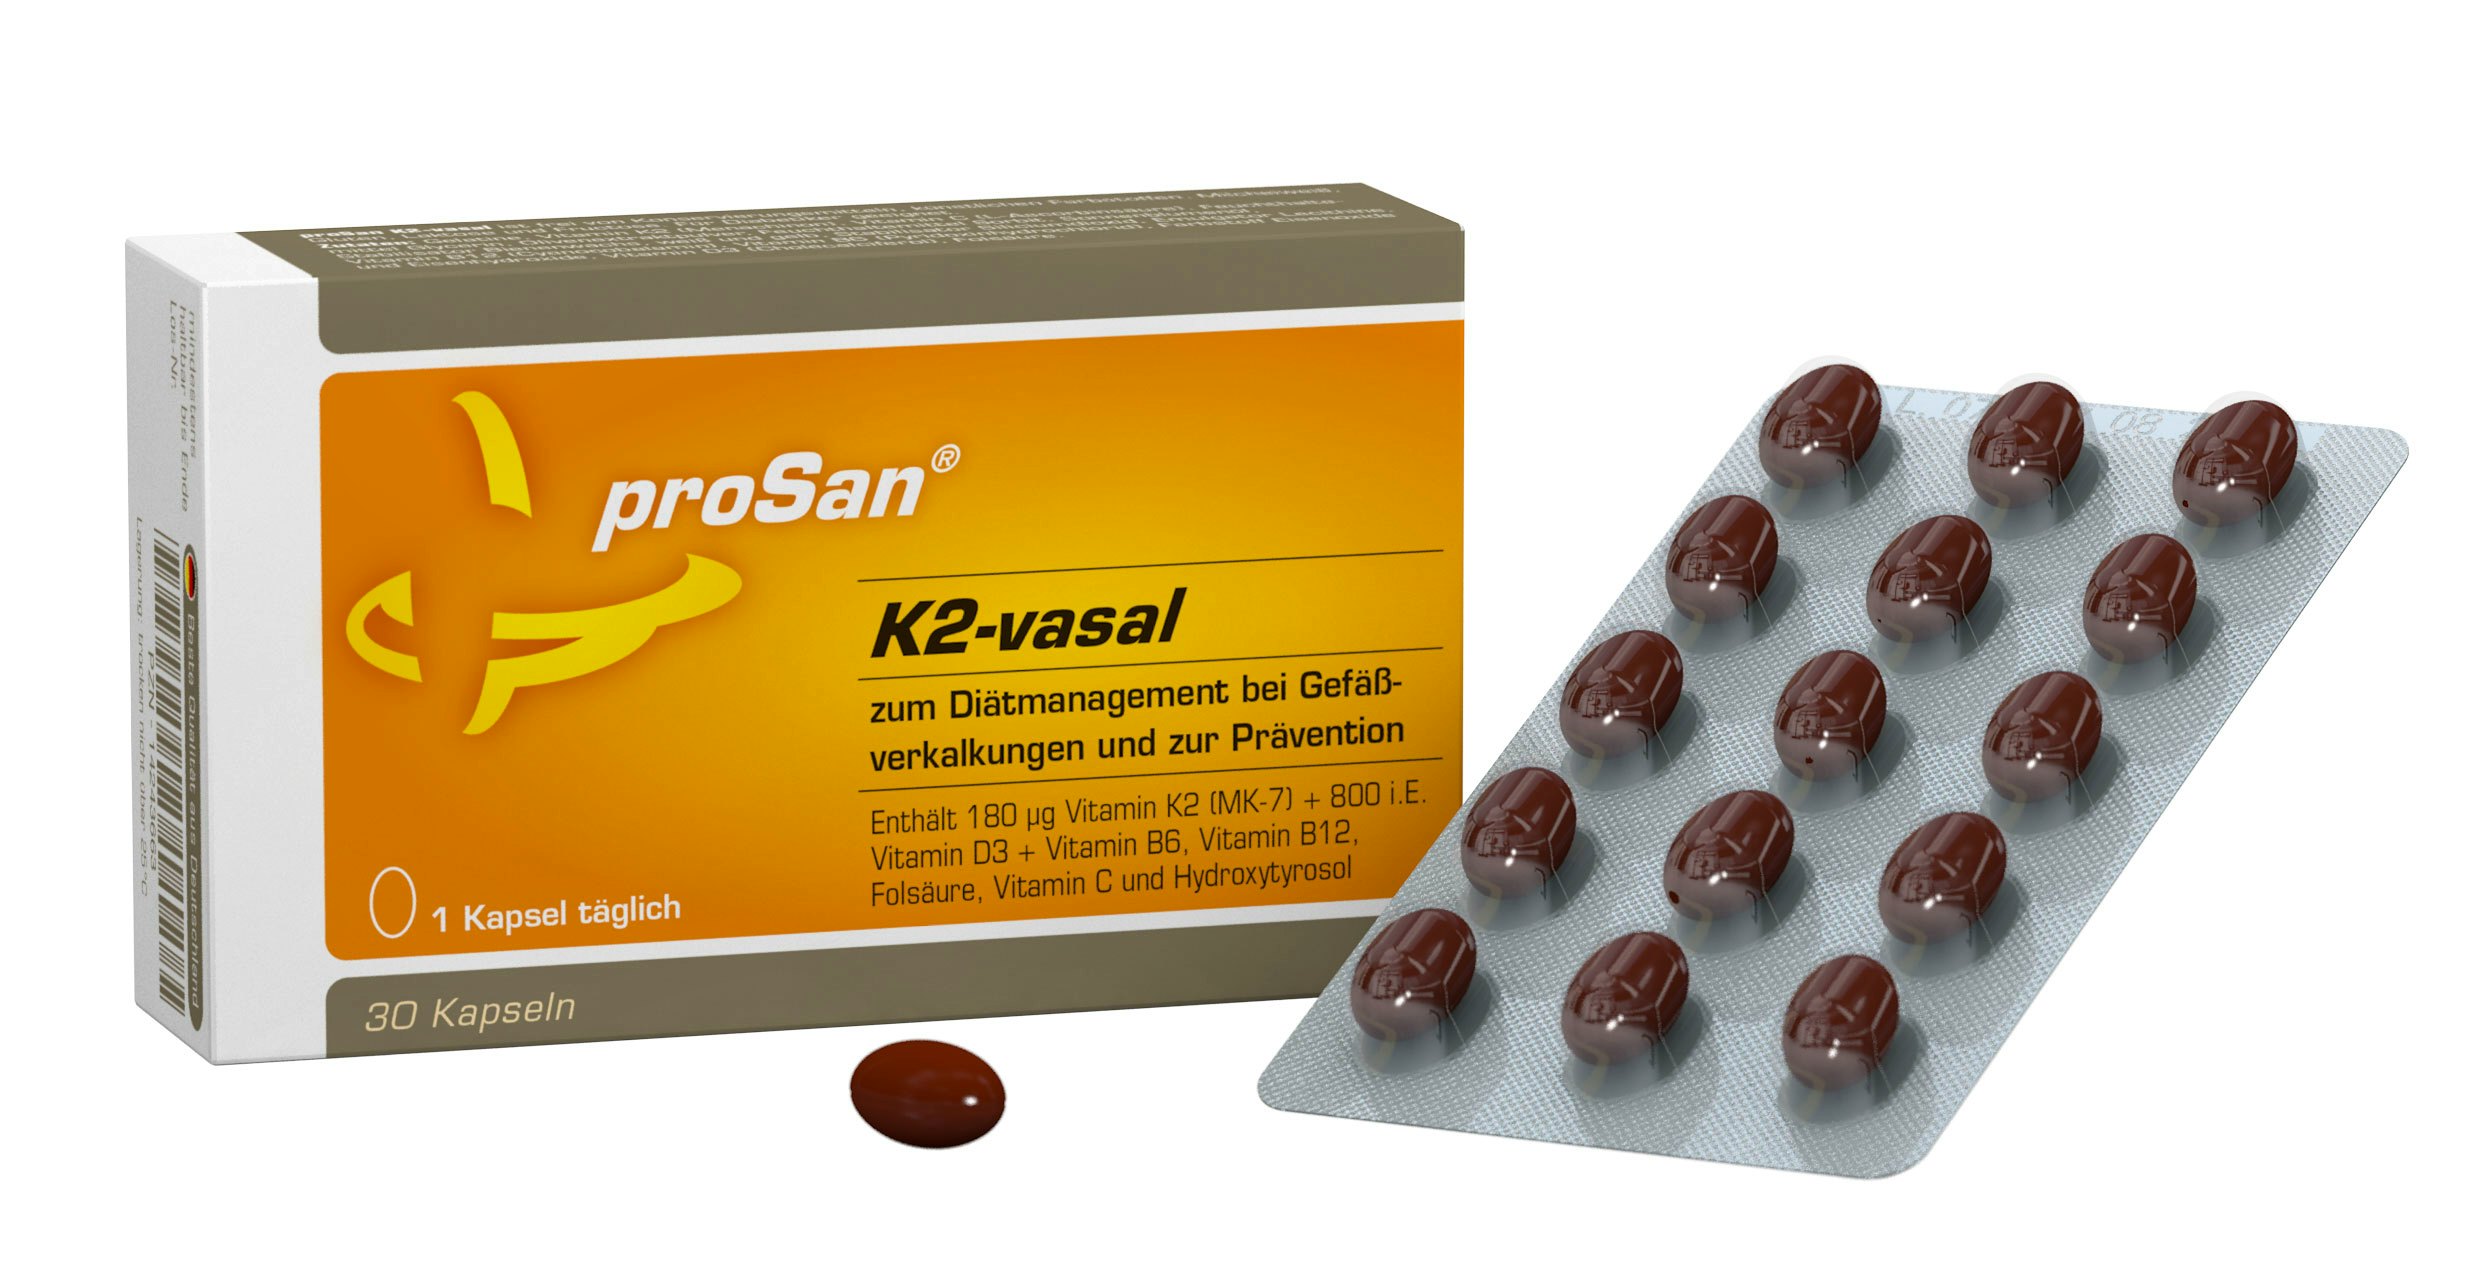 proSan K2-vasal